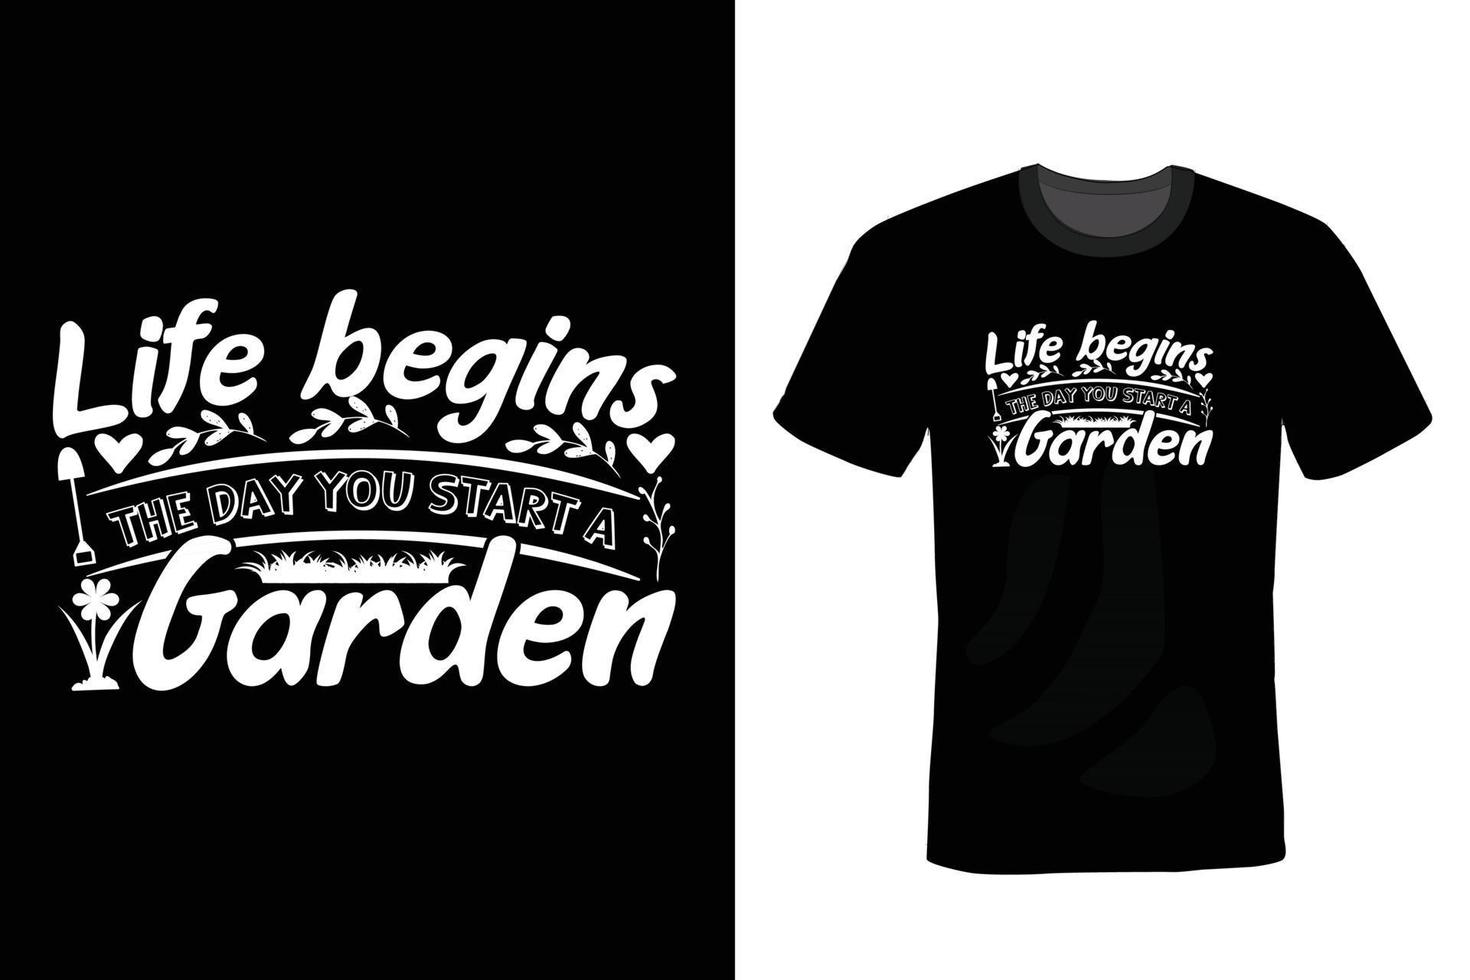 diseño de camiseta de jardín, vintage, tipografía vector